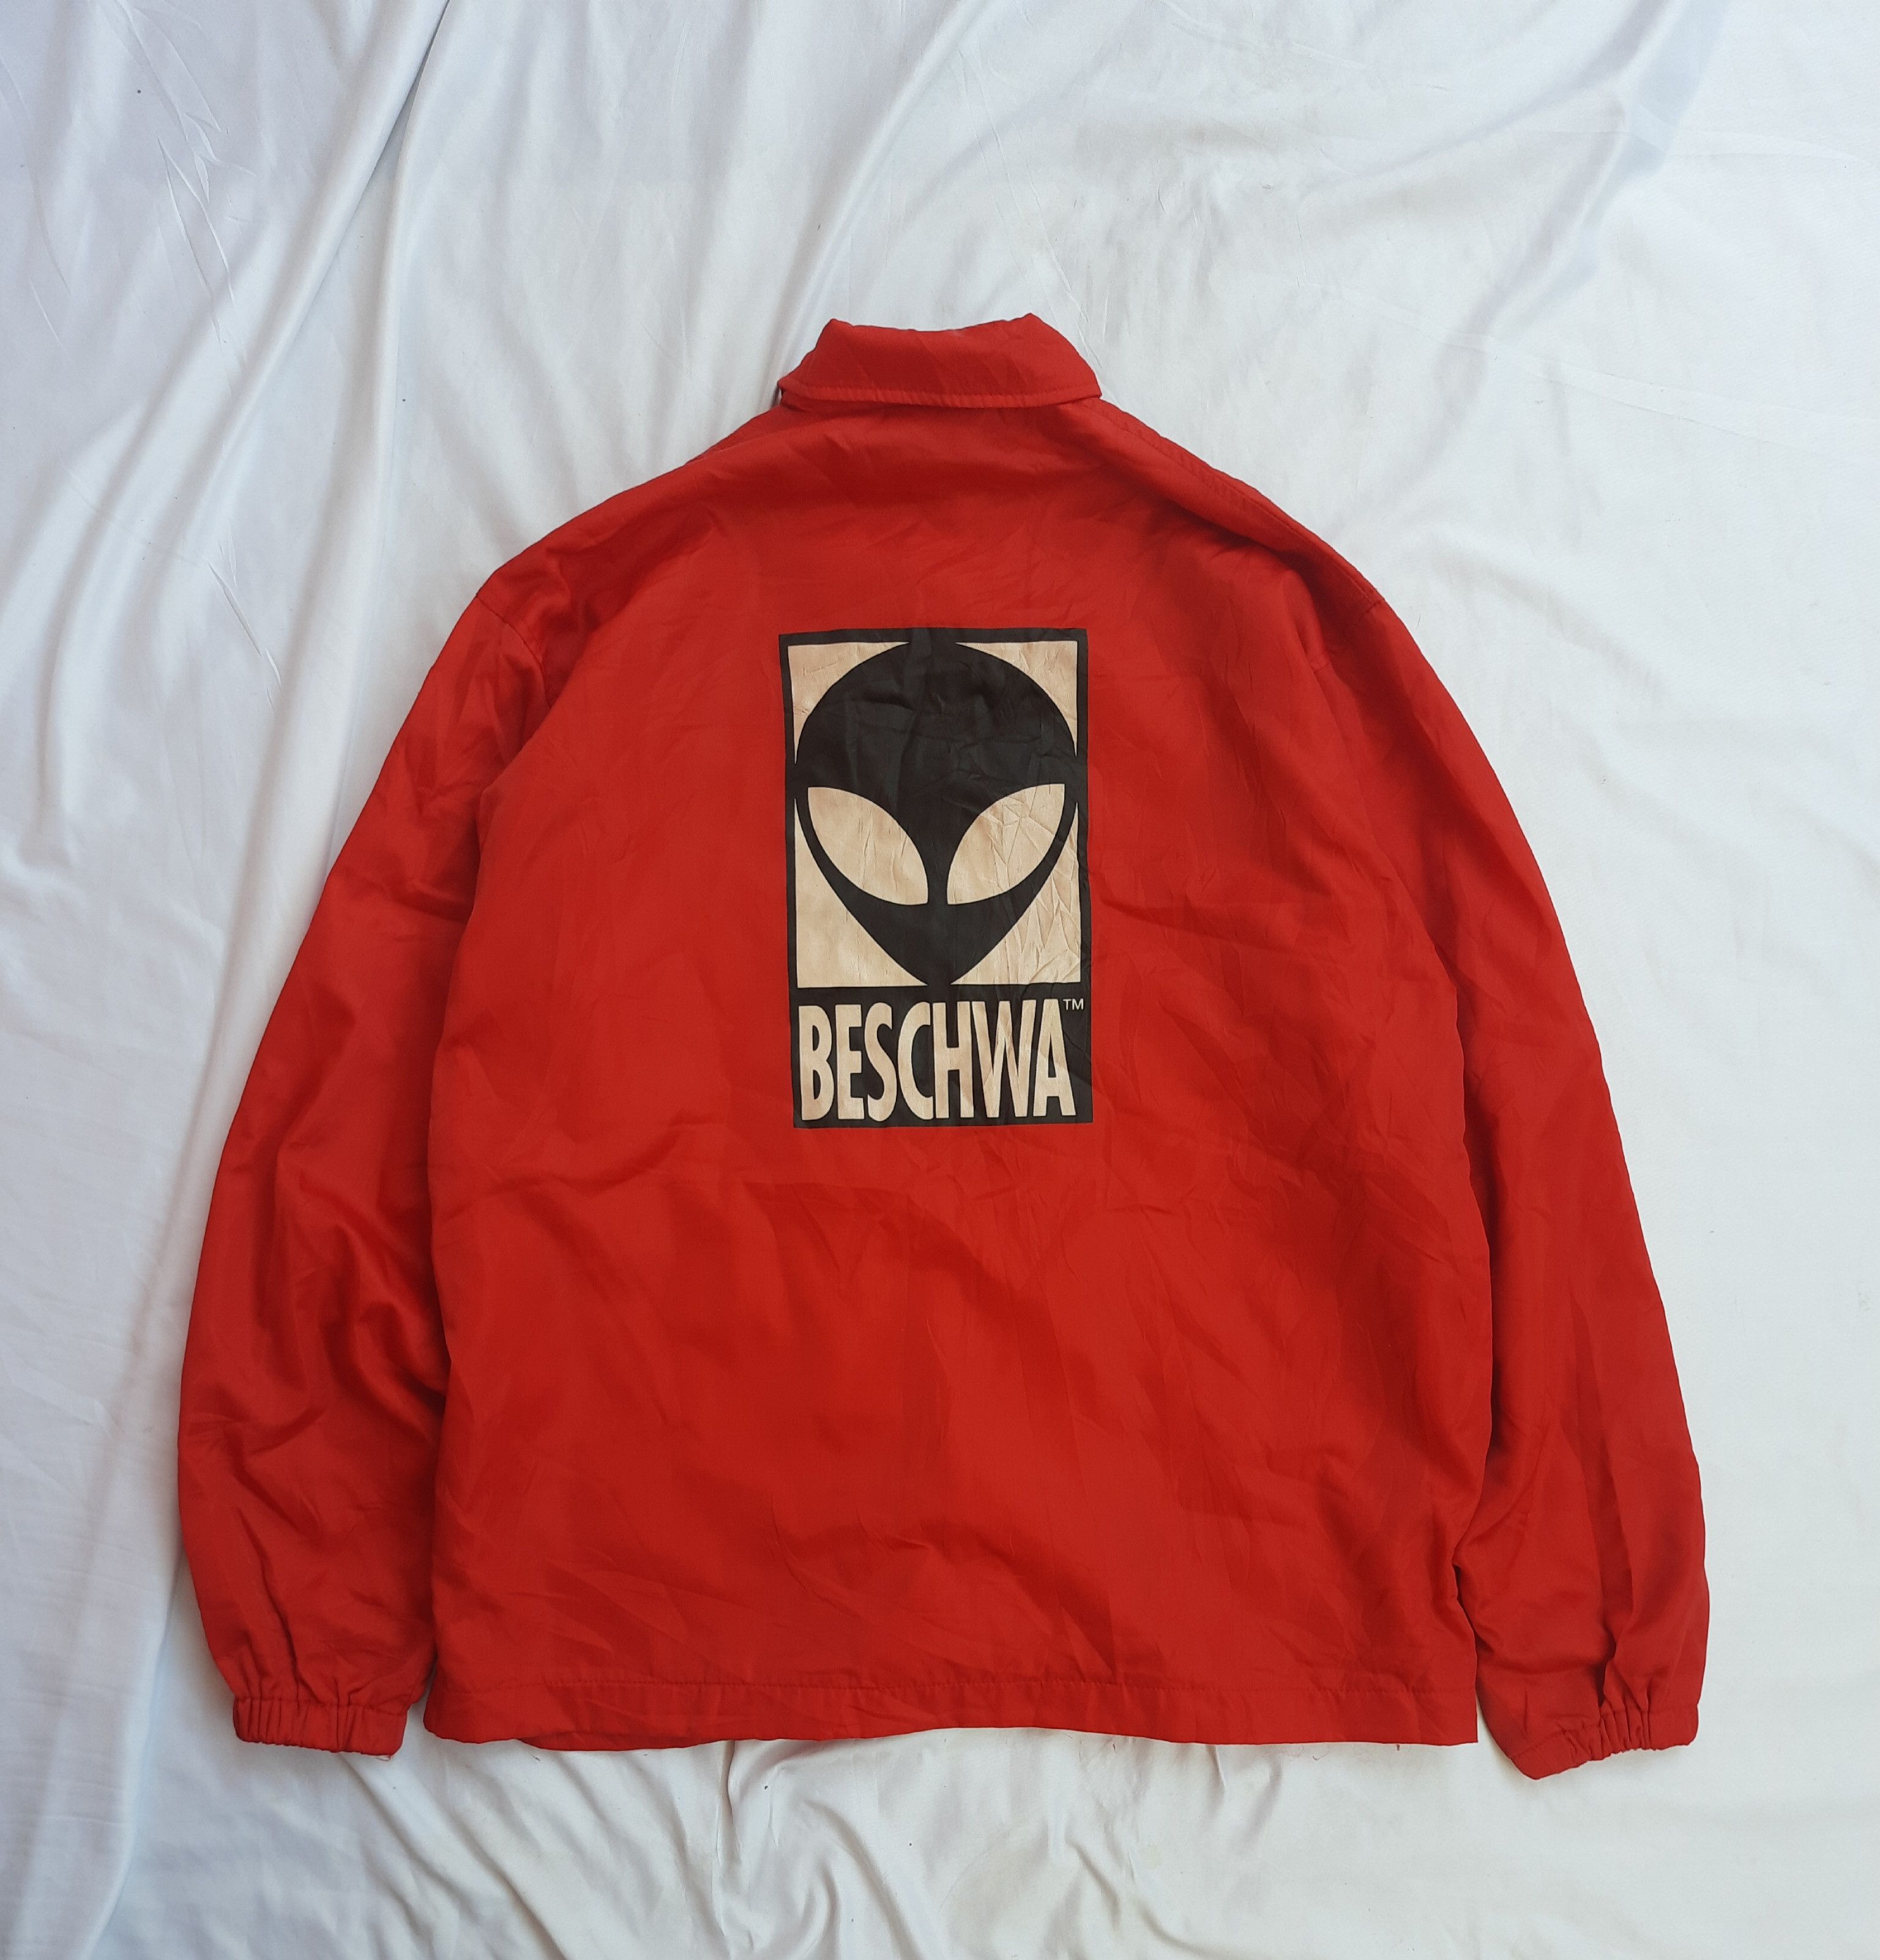 Tony Hawk Beschwa alien workshop coach jacket | Grailed